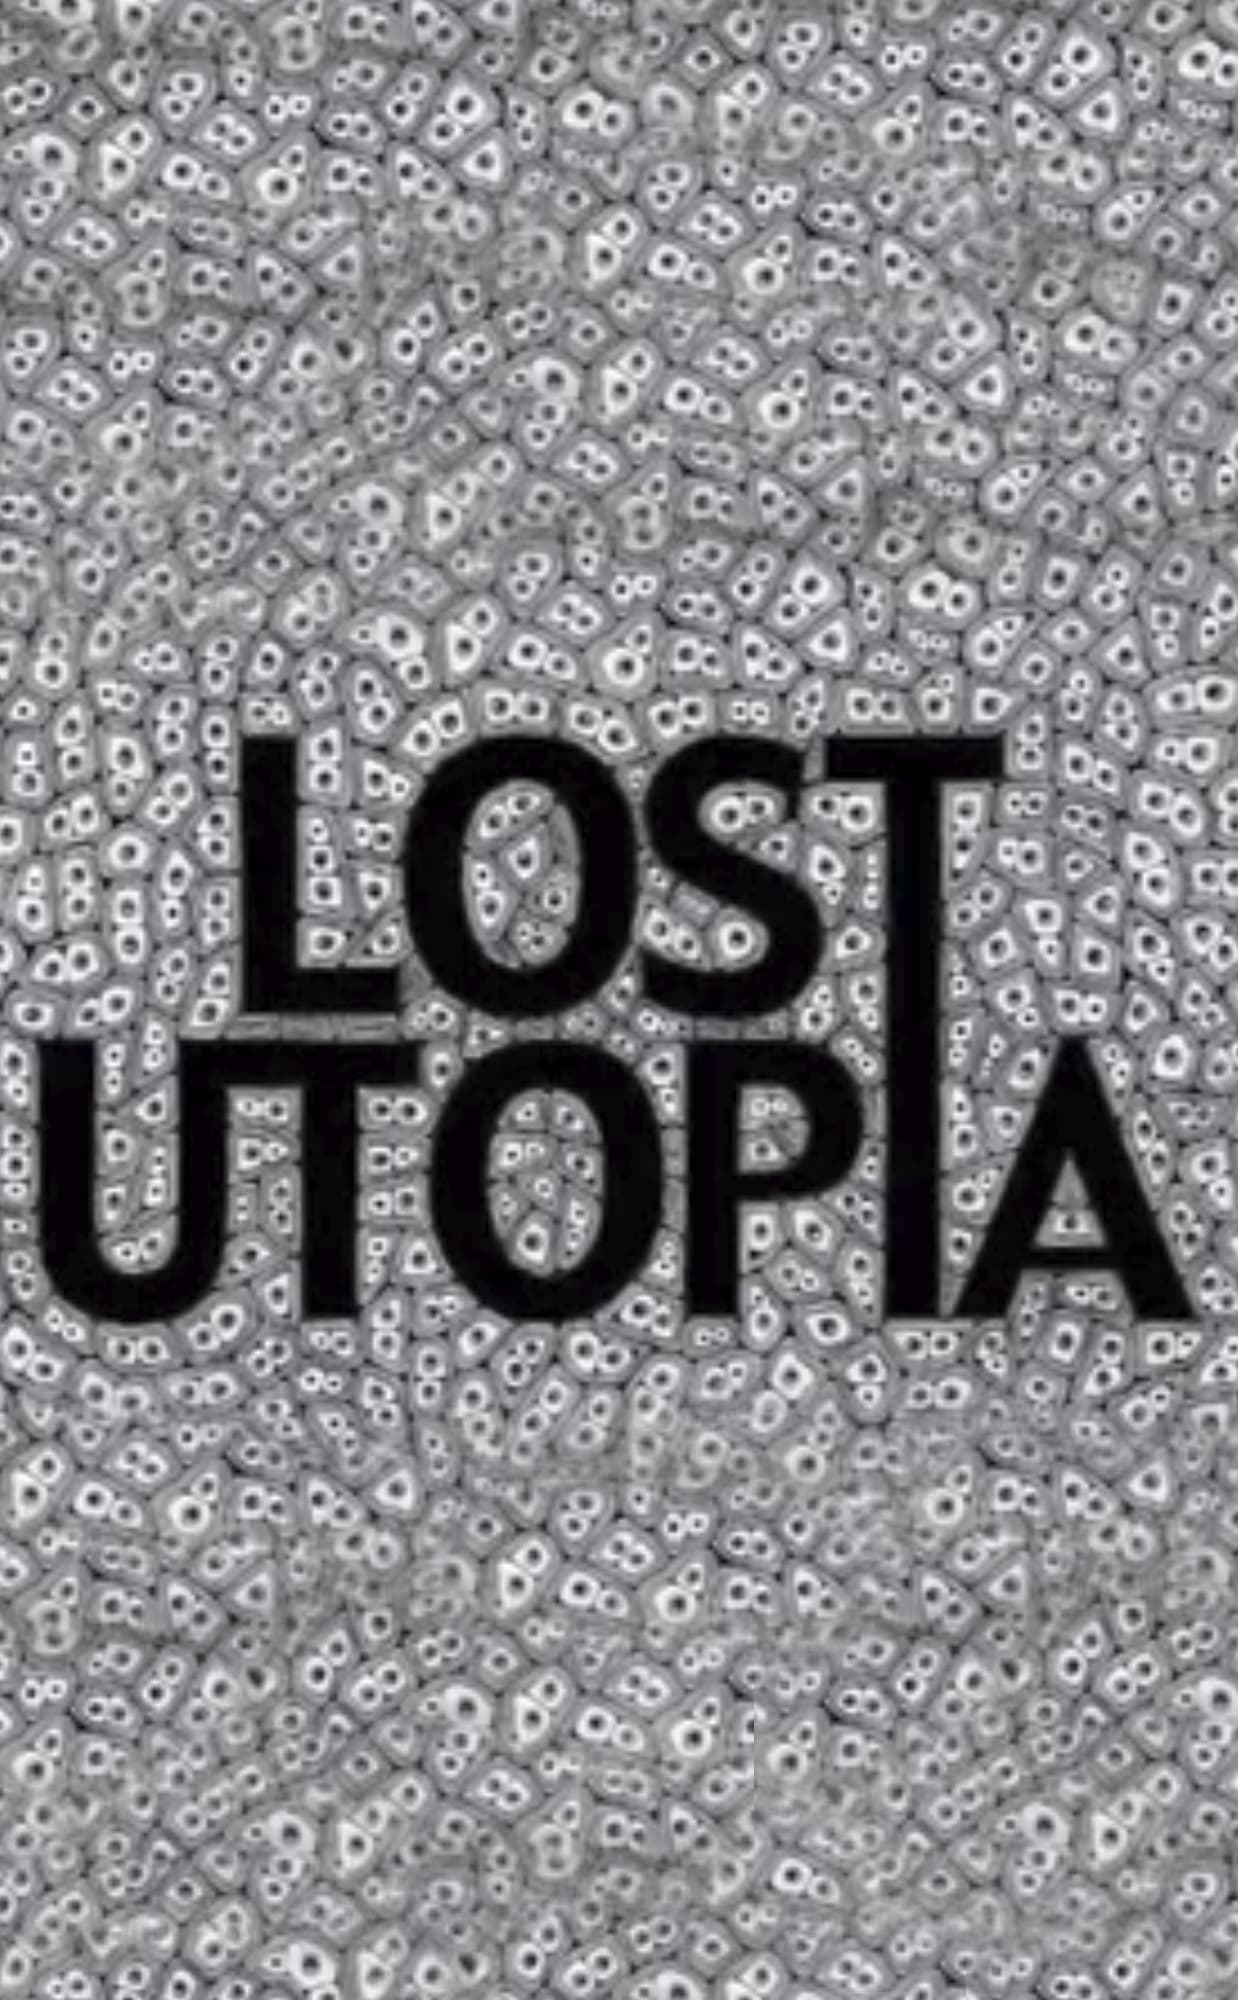 Lost Utopia